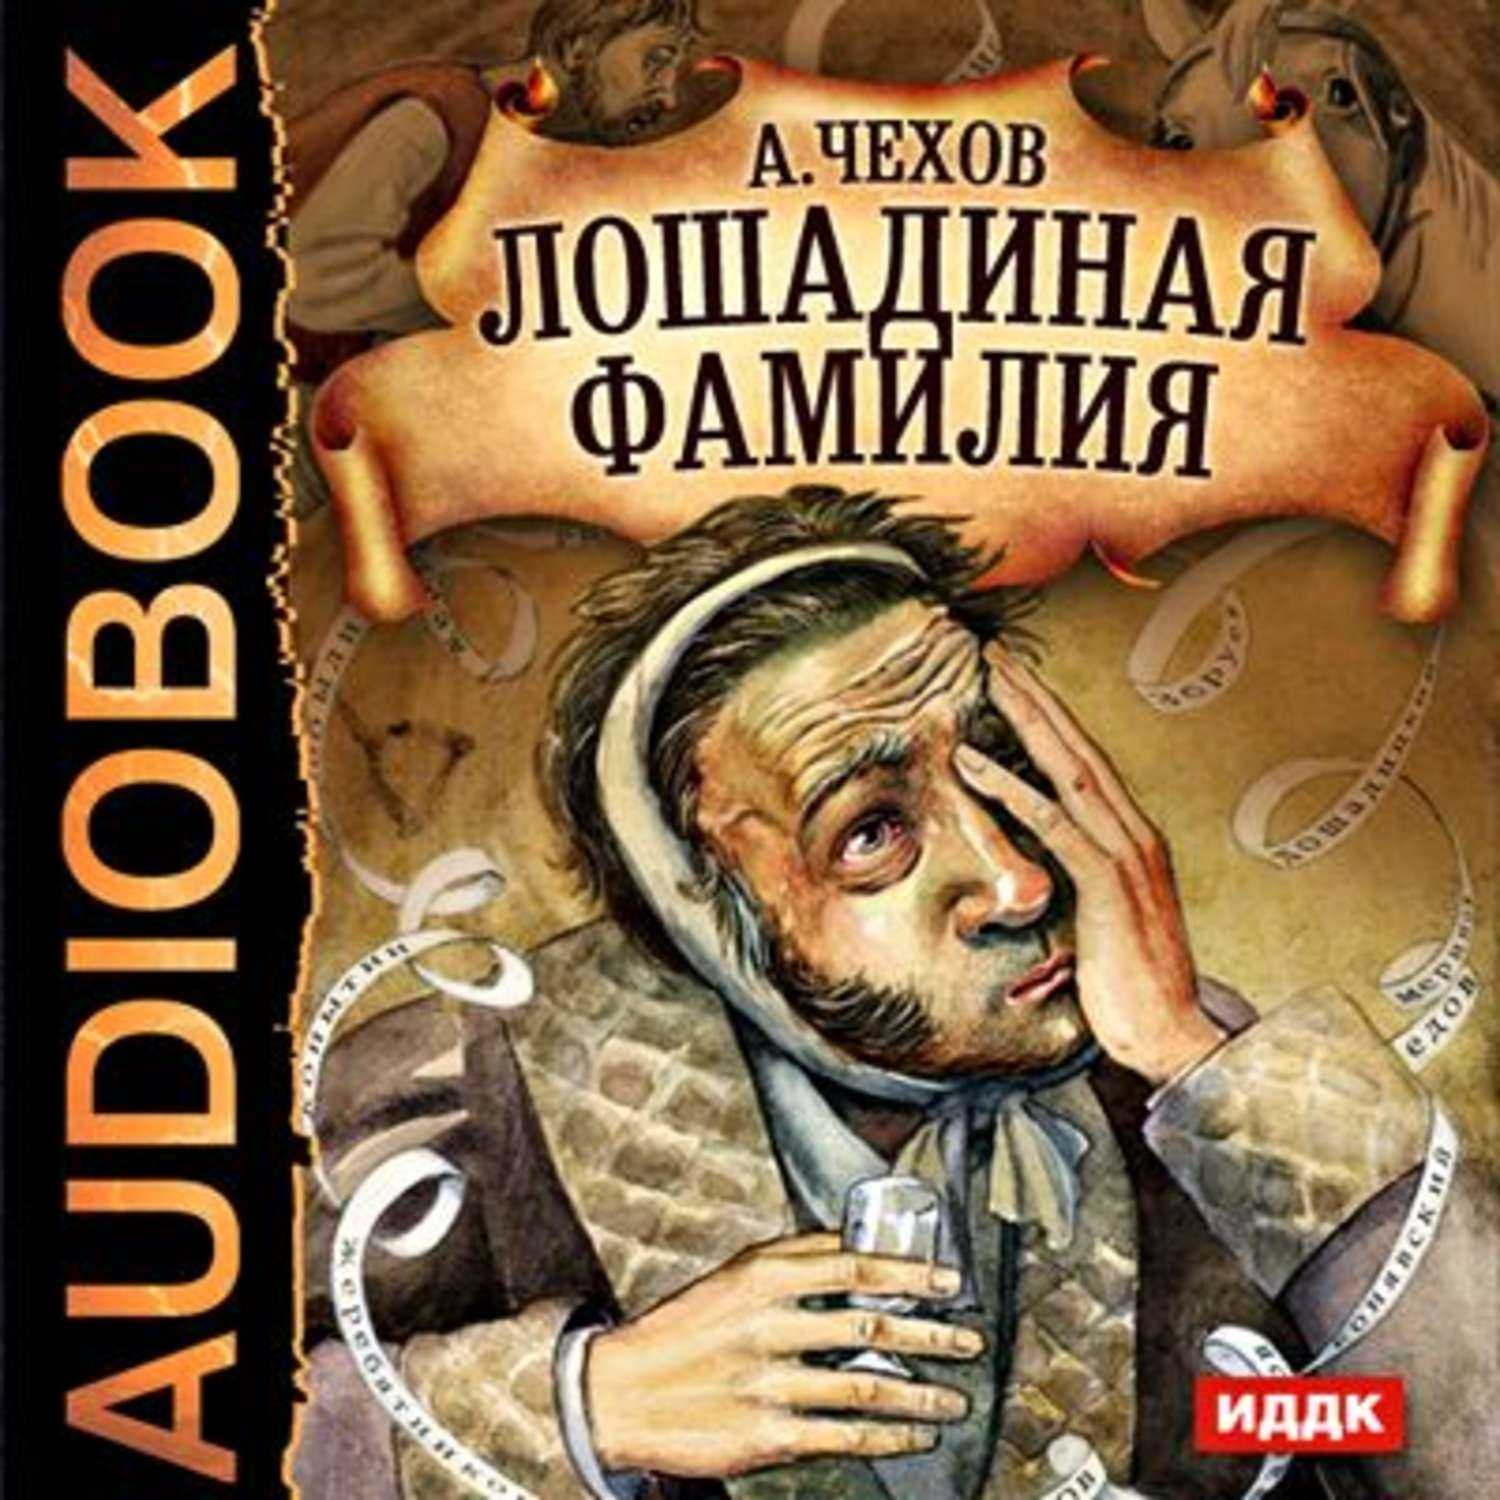 Книги чехова аудиокнига. Иллюстрация к лошадиной фамилии Чехова.